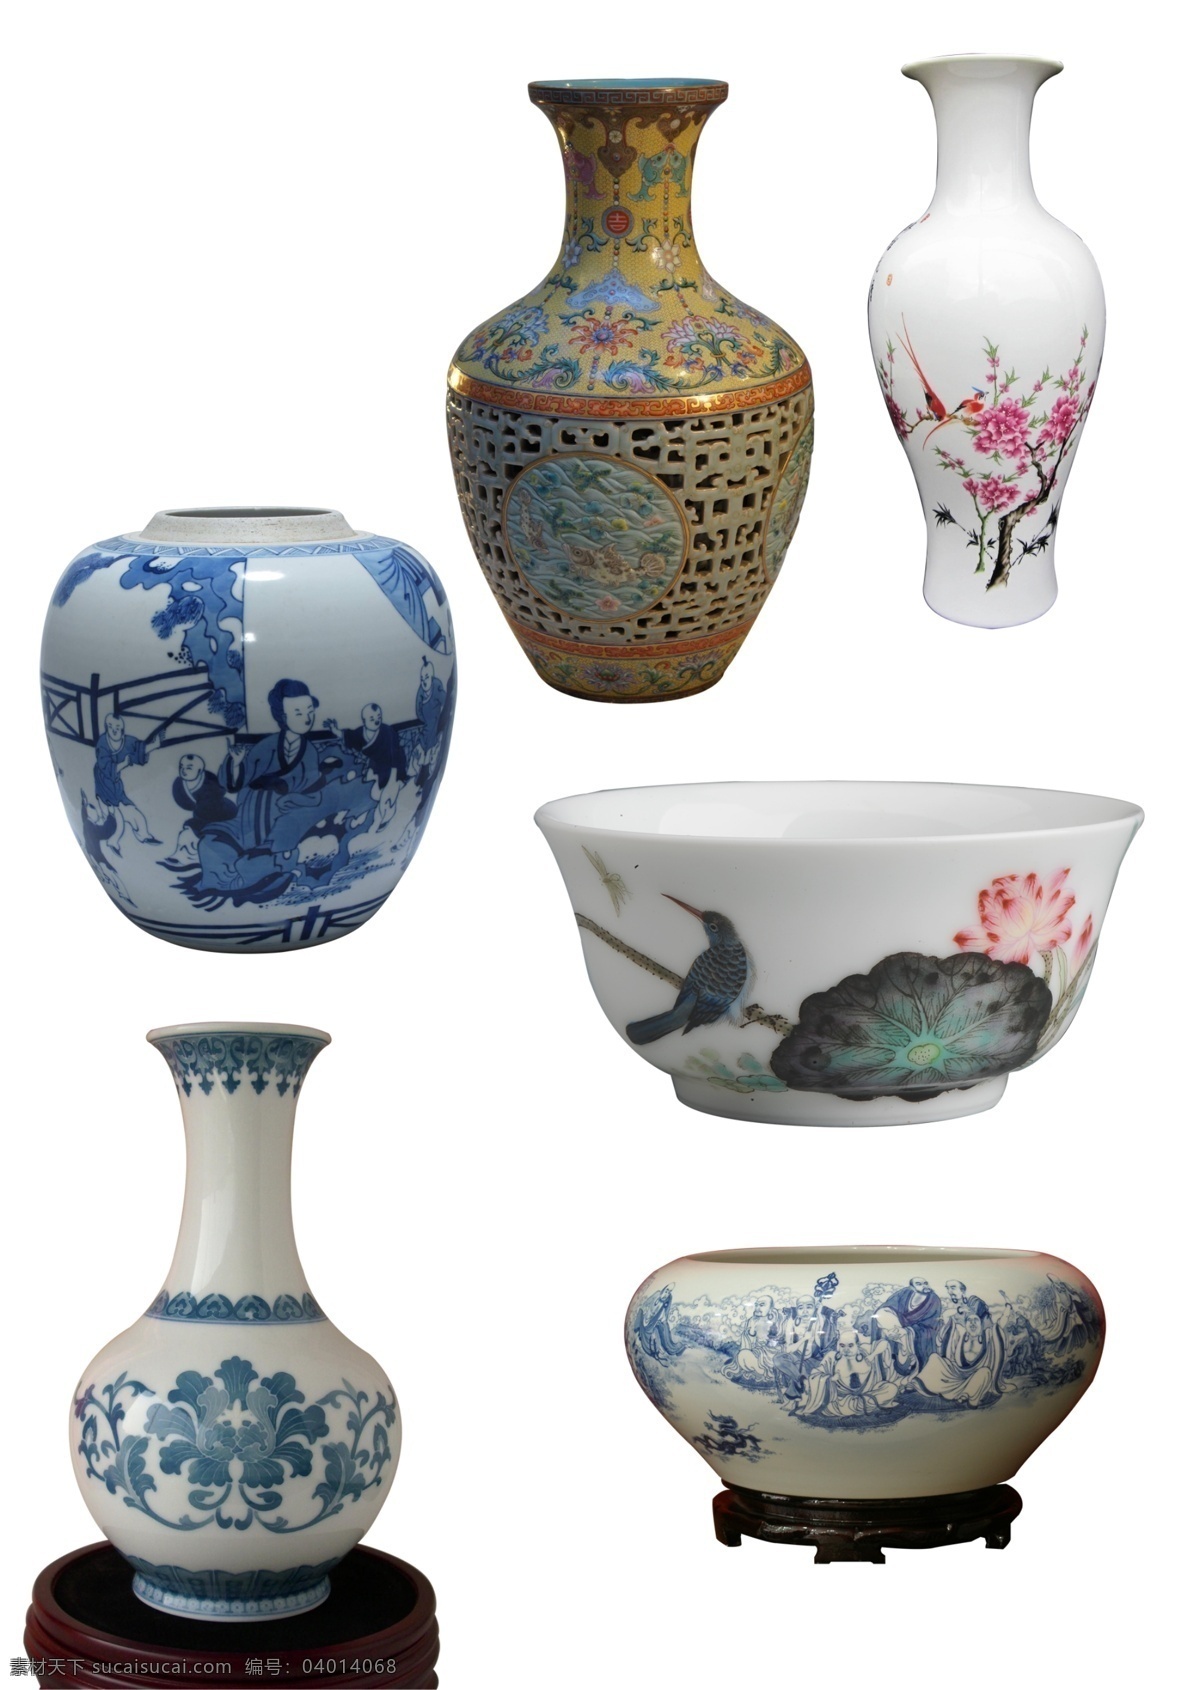 瓷碗 古代瓷瓶 古典 瓷器 古典花瓶 各种瓷器 古代瓷器 psd源文件